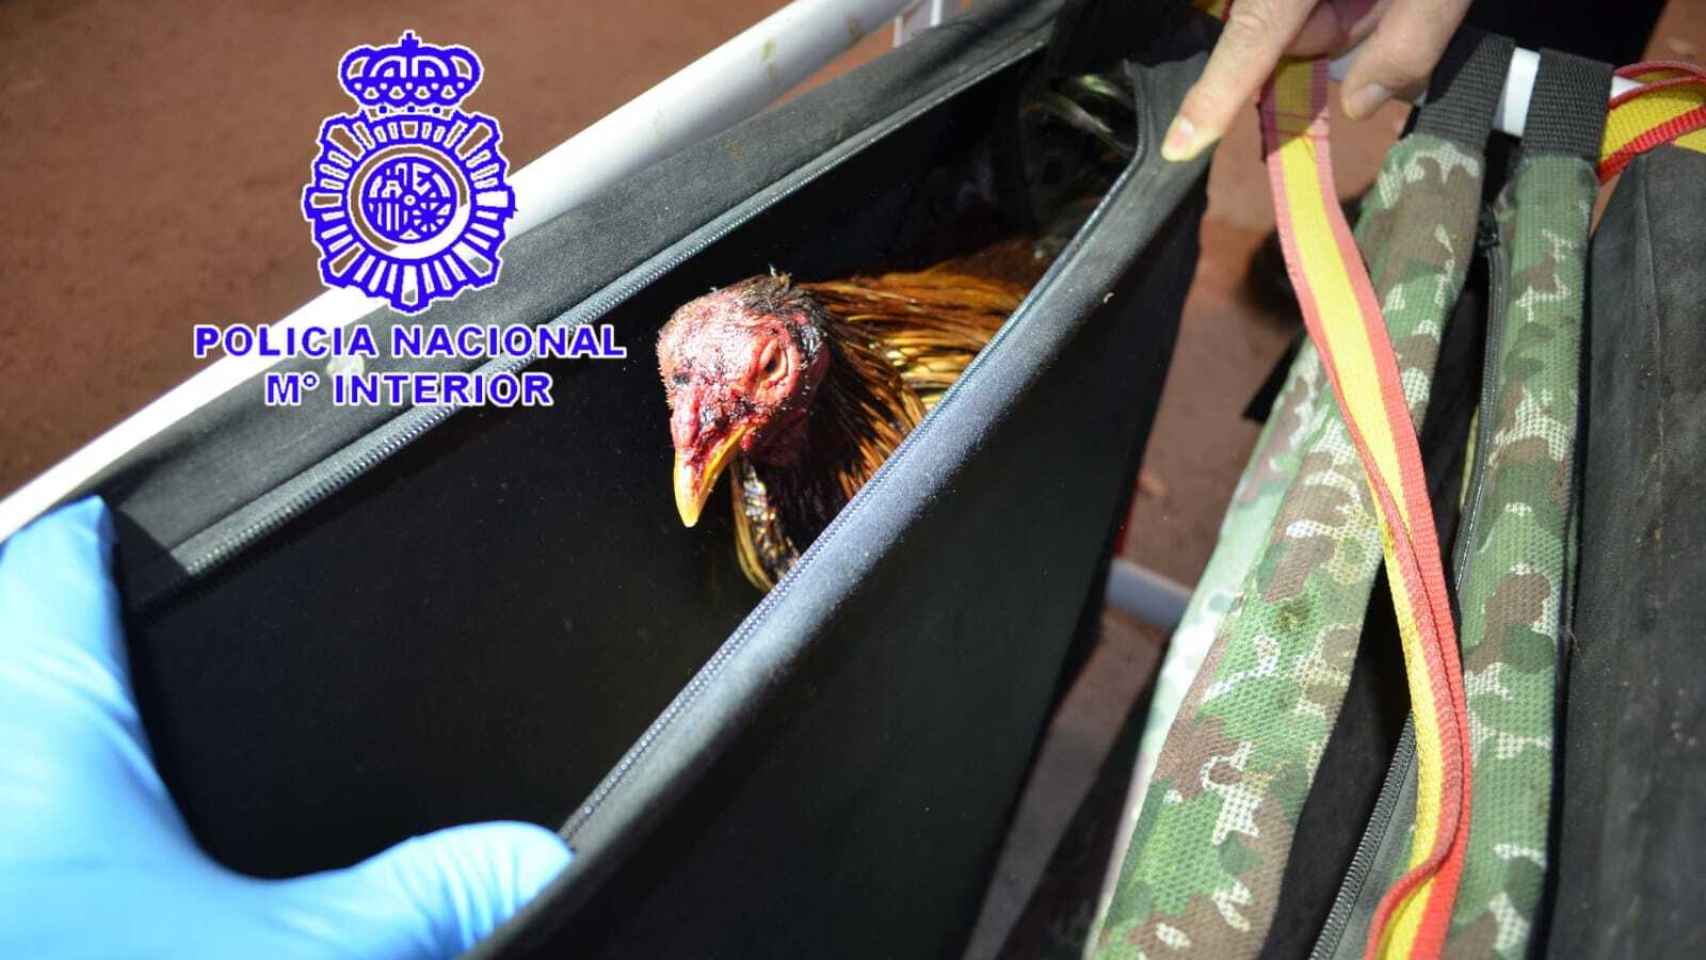 Imagen de uno de los gallos facilitada por la Policía Nacional